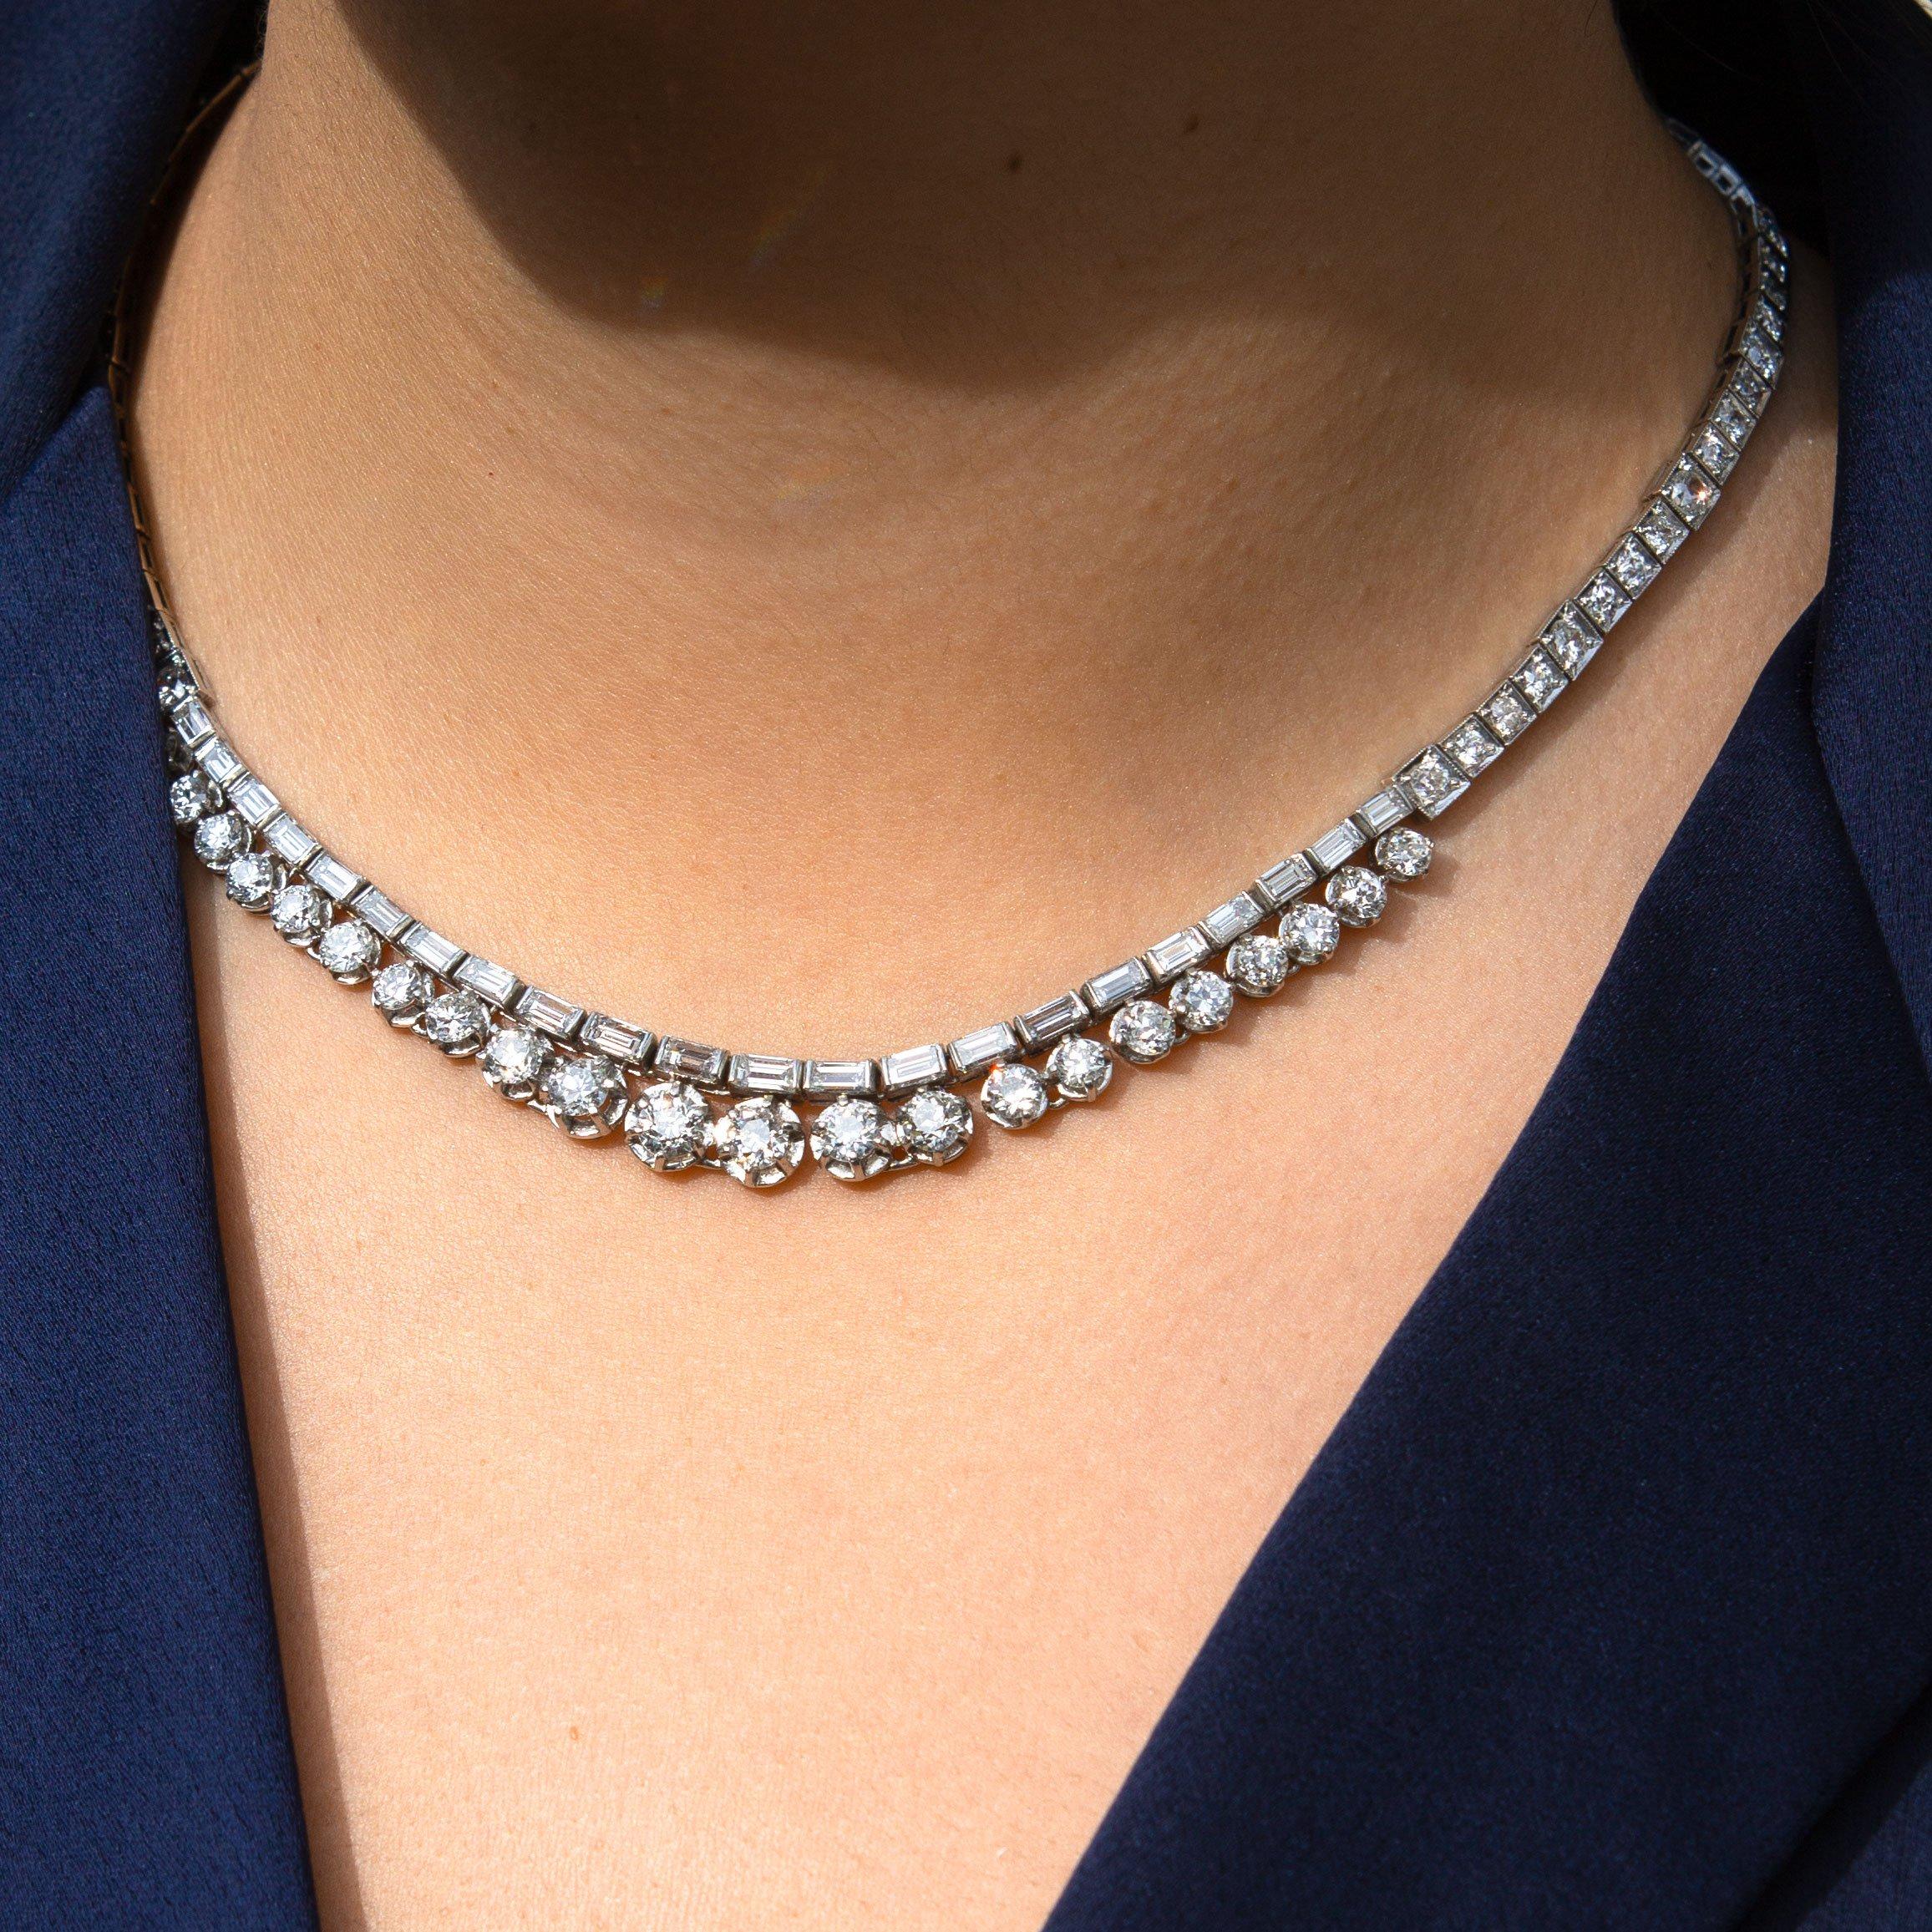 C'est un bijou qui n'a pas besoin d'être présenté. Ce magnifique collier de diamants de l'ère Art déco contient une quantité considérable d'étincelles, près de 17 carats pour être exact. Un chapelet de diamants de taille européenne ancienne et de